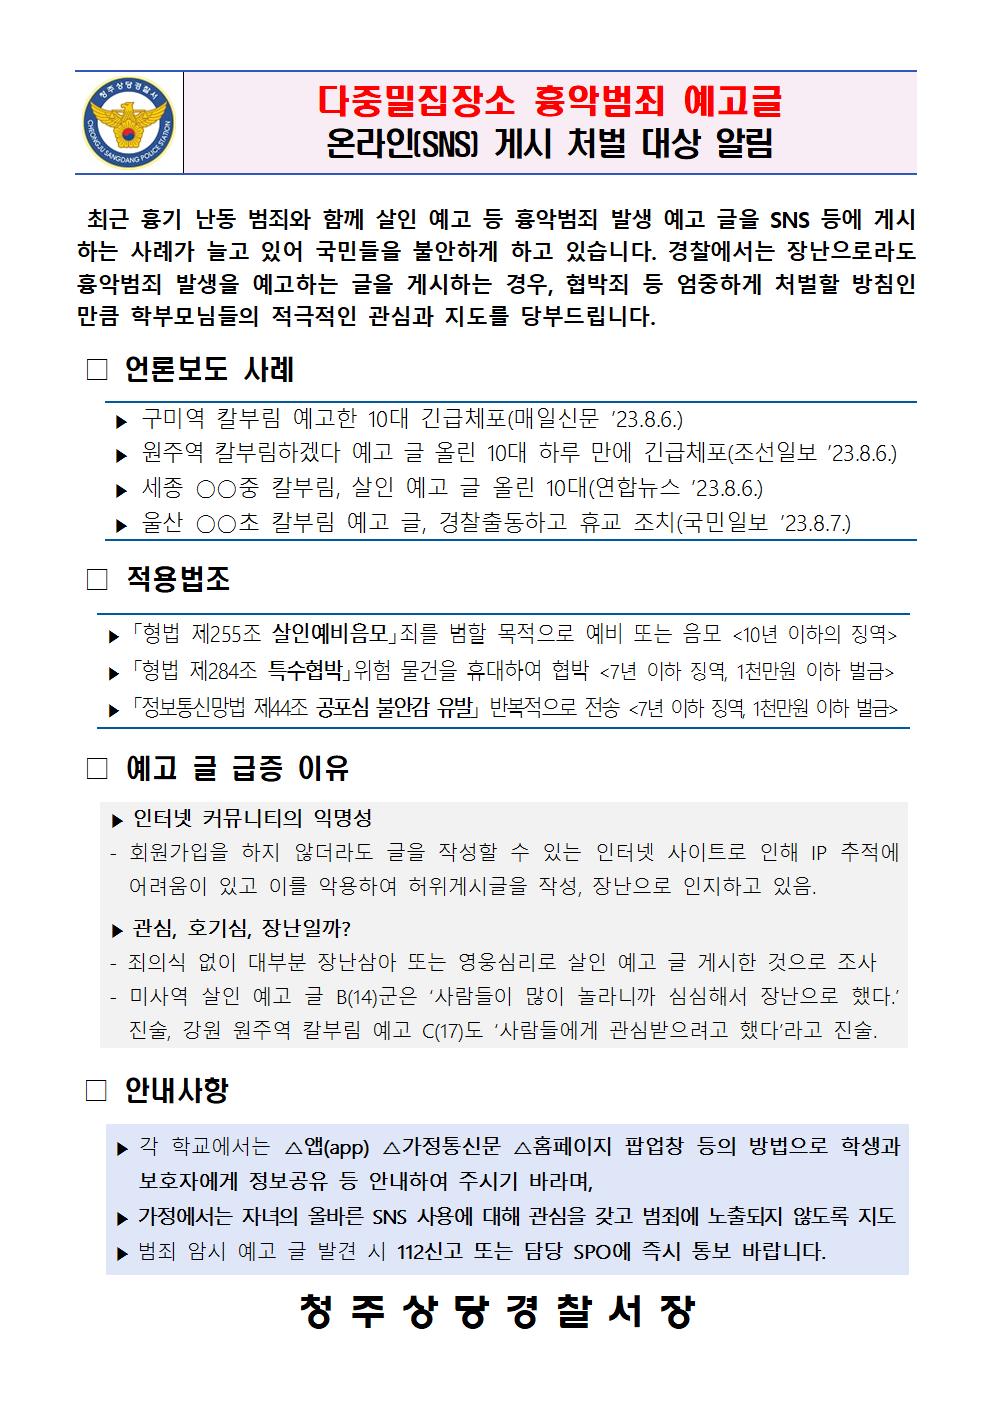 다중범죄장소 흉악범죄 예고글, SNS 게시 처벌대상 알림(청주상당경찰서)001